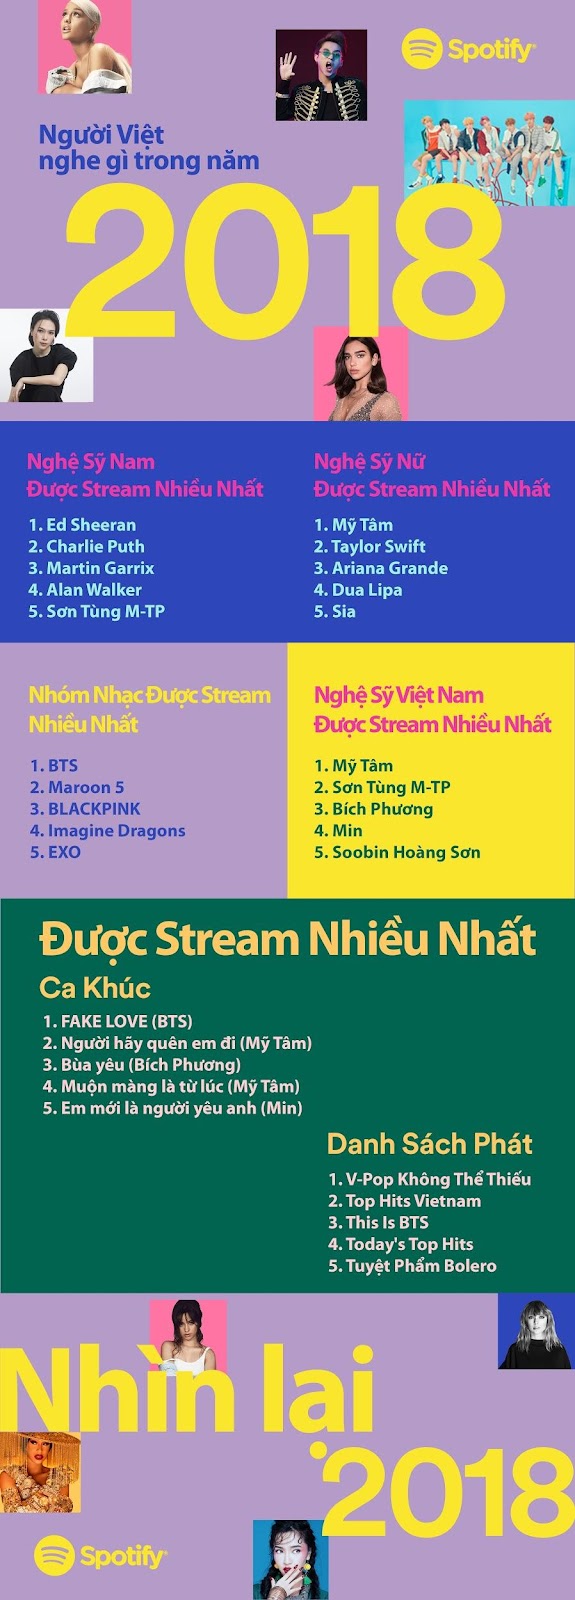 Spotify công bố danh sách xếp hạng âm nhạc toàn cầu và Việt Nam - Q QefVj3XXPucp lR